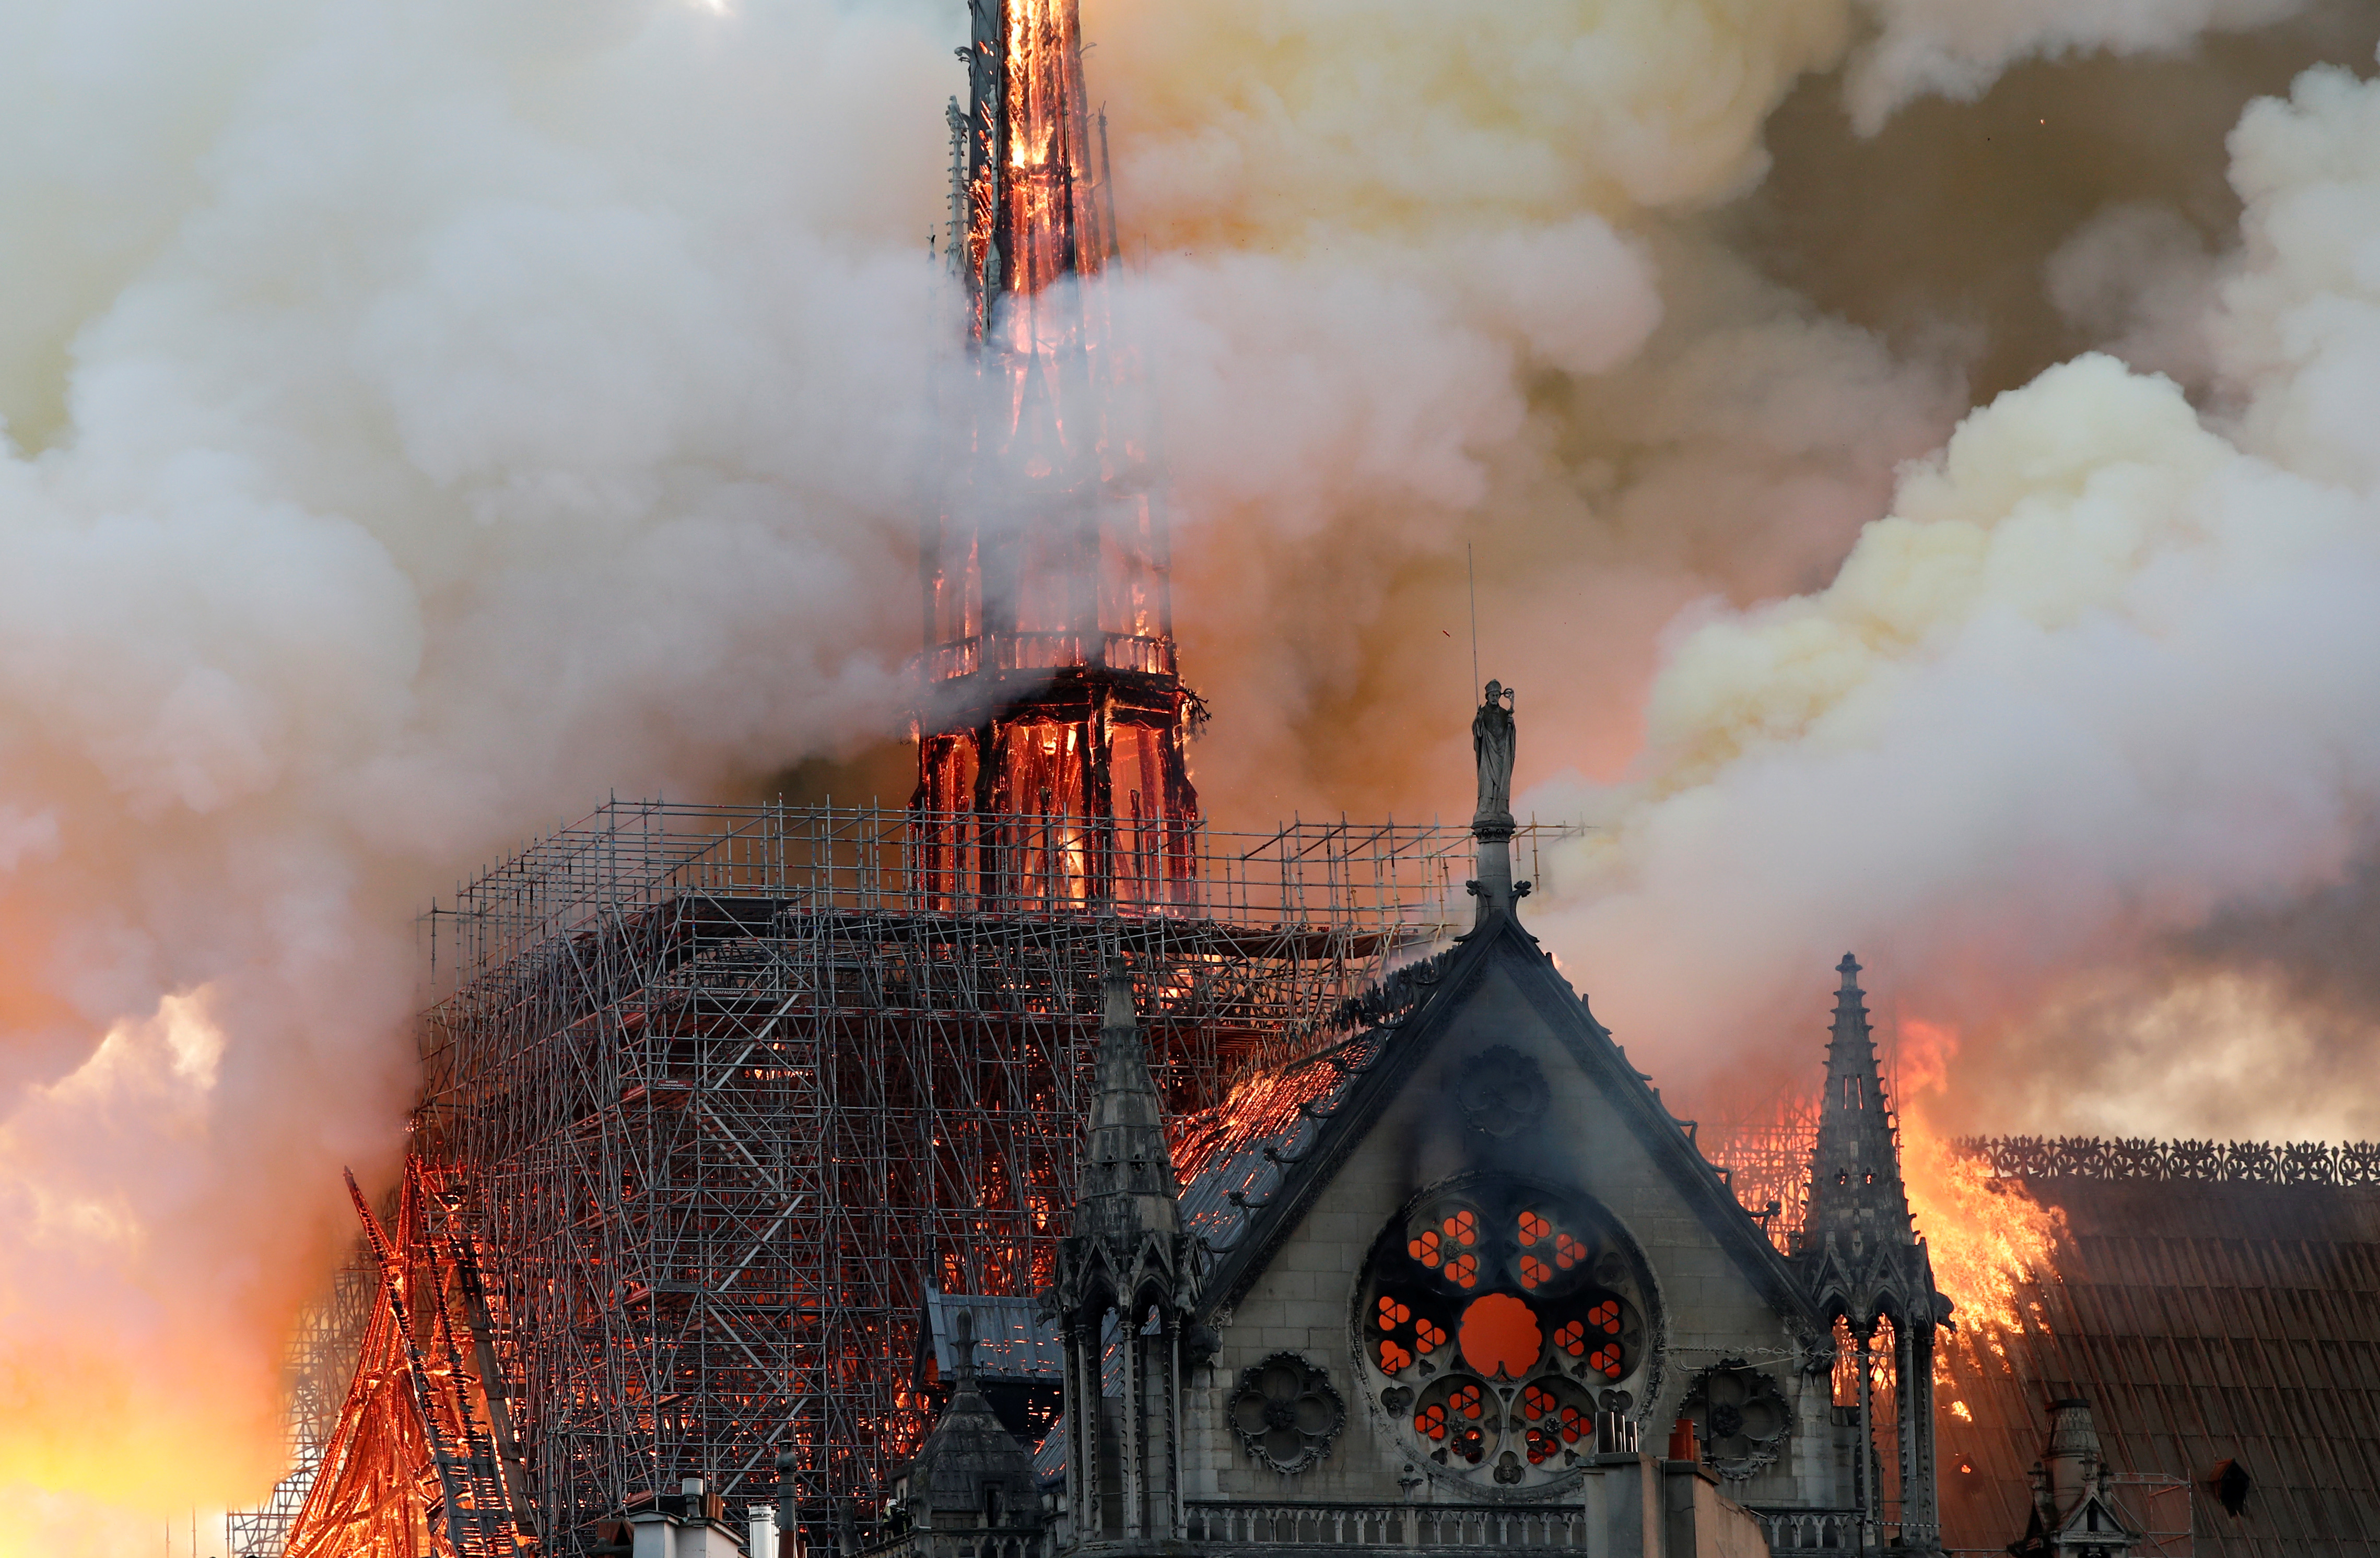 La noche triste de Notre Dame